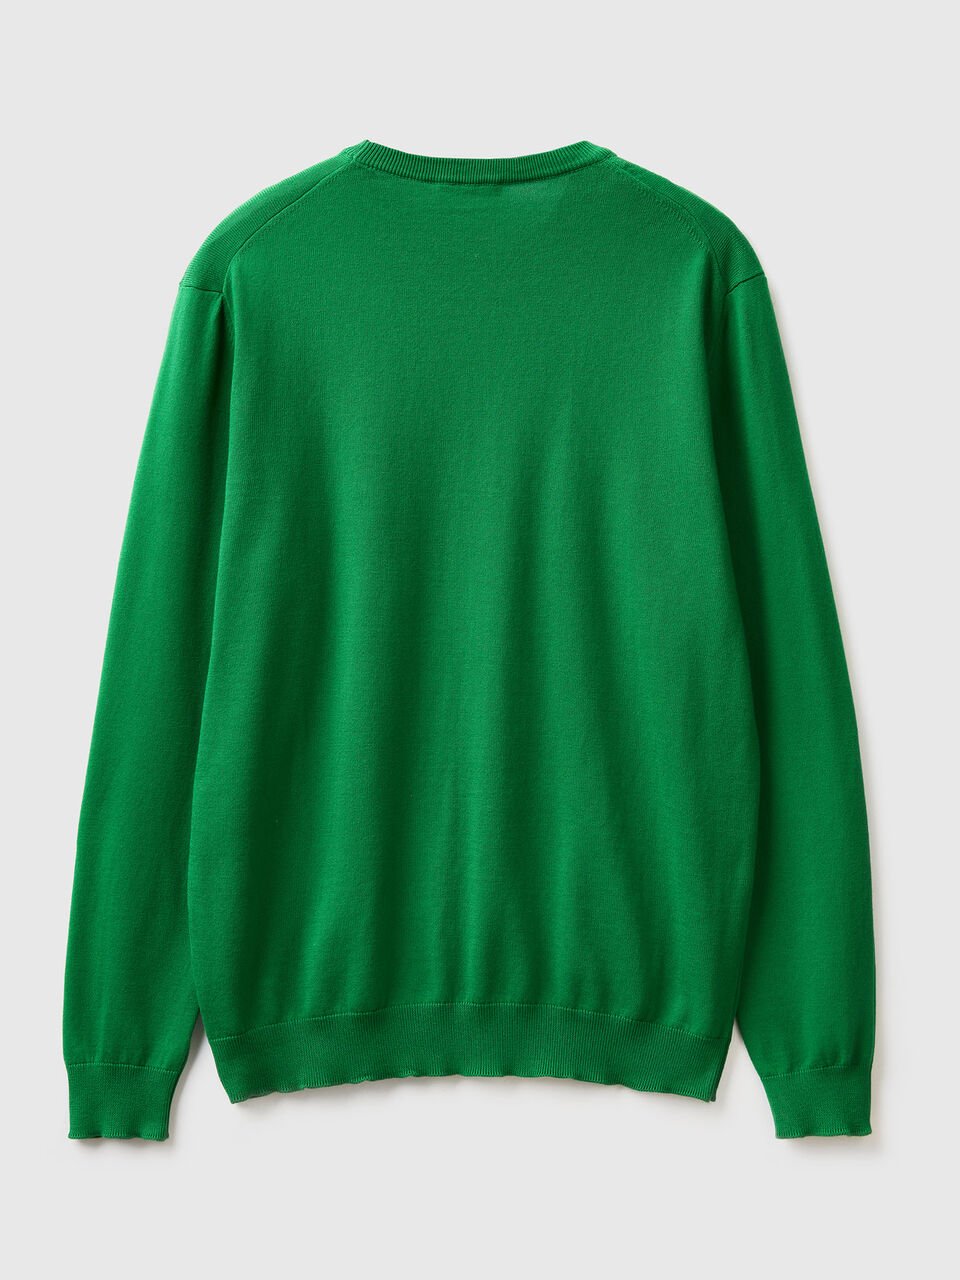 Crew neck sweater in 100% cotton - Dark Green